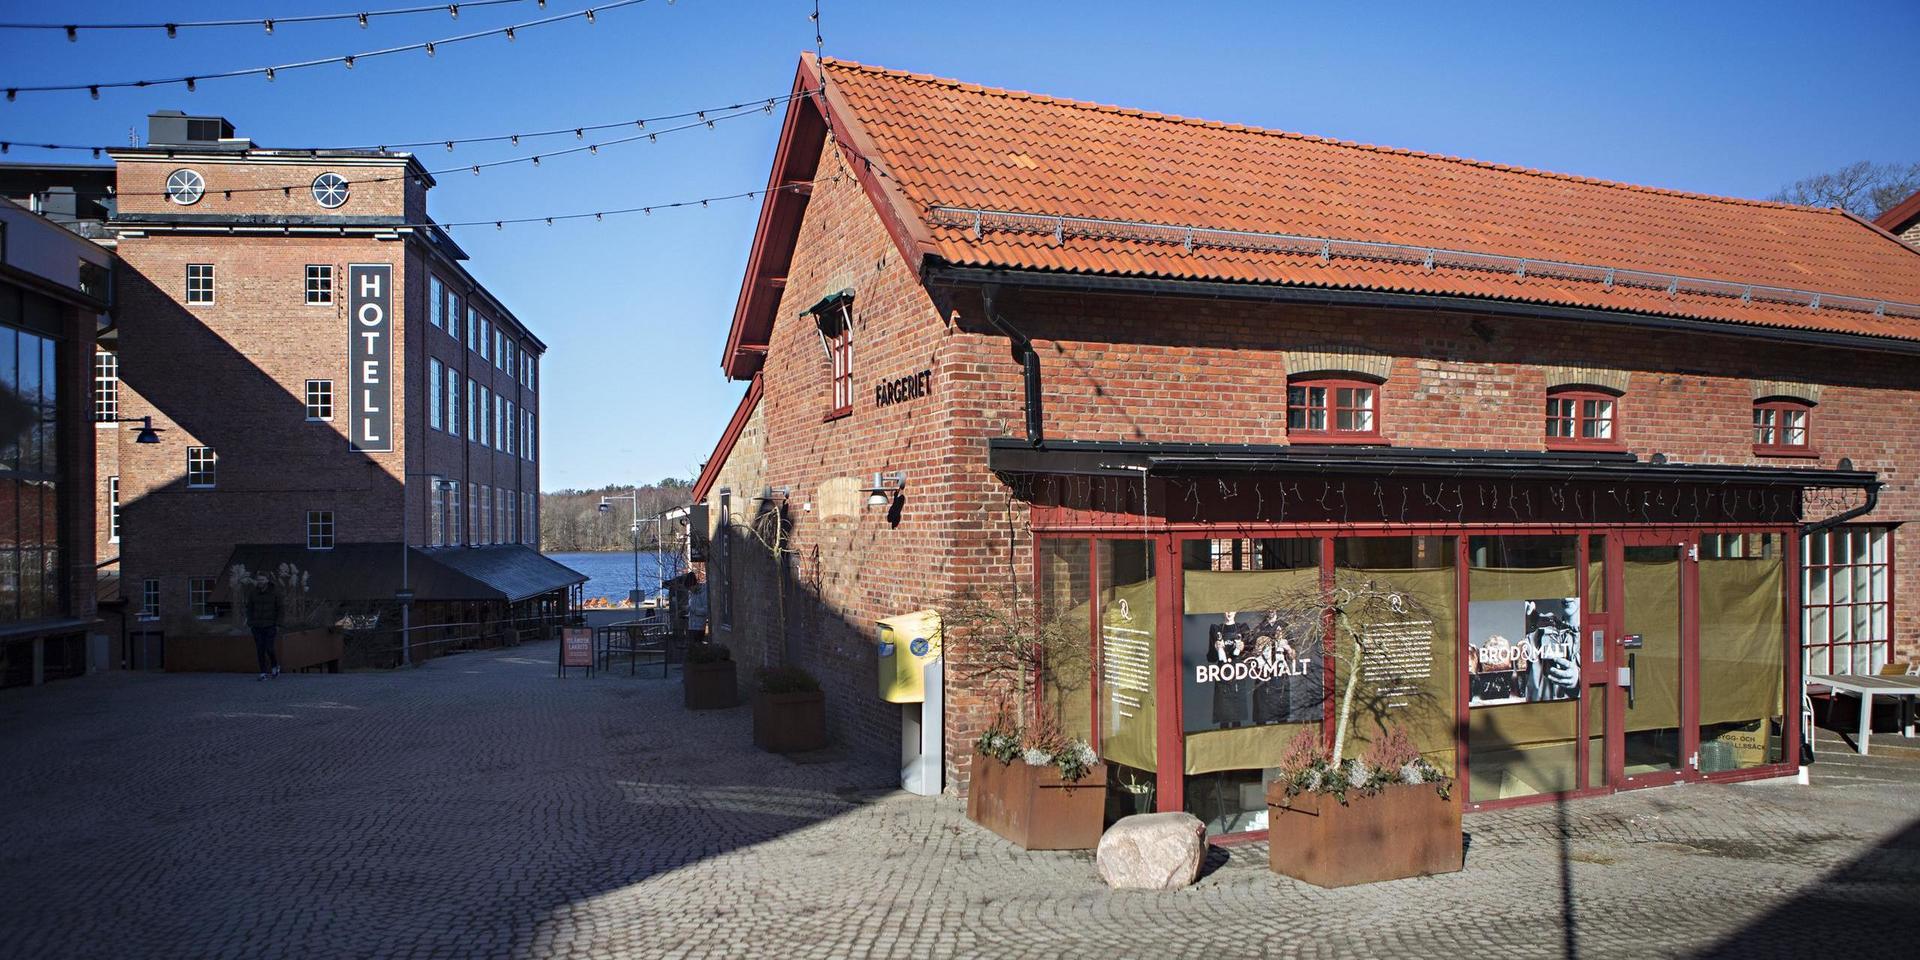 På Nääs fabriker i Tollered öppnar mikrobryggeriet och bageriet Bröd &amp; Malt, med premiär under valborgshelgen den 30 april.